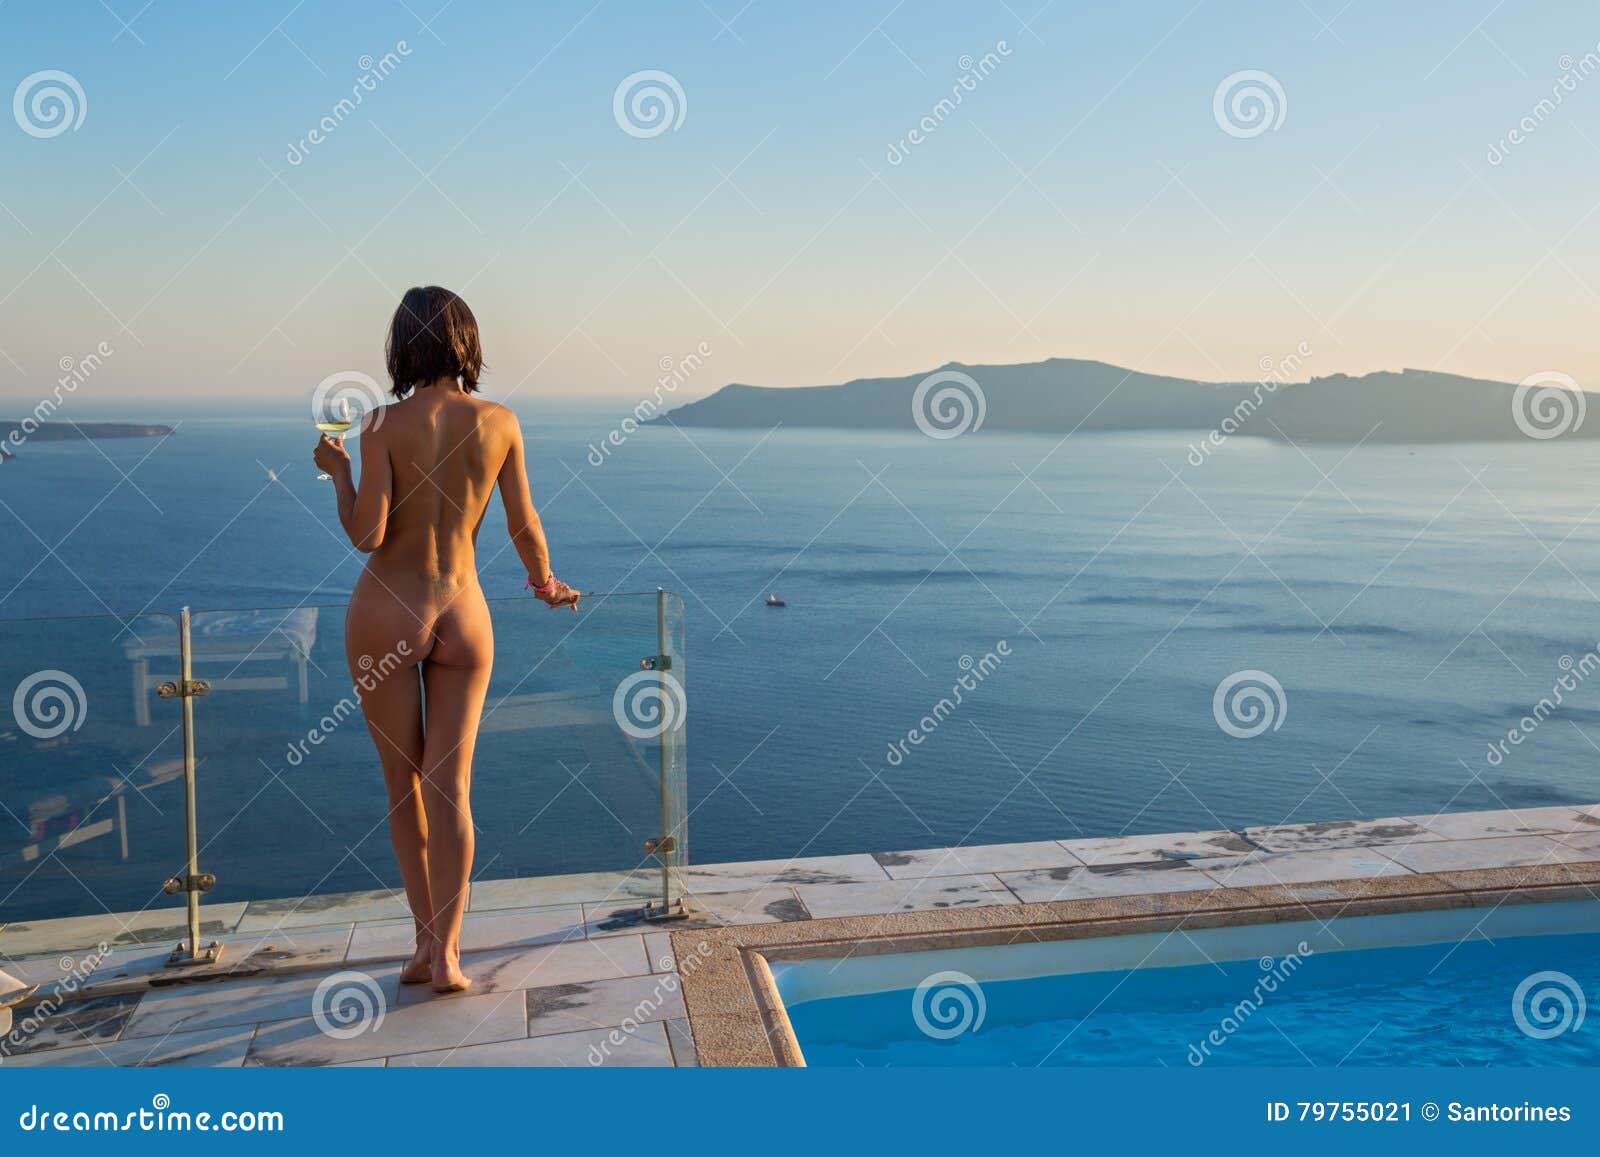 Naked Sonnenbaden Auf Kreuzfahrtschiffen